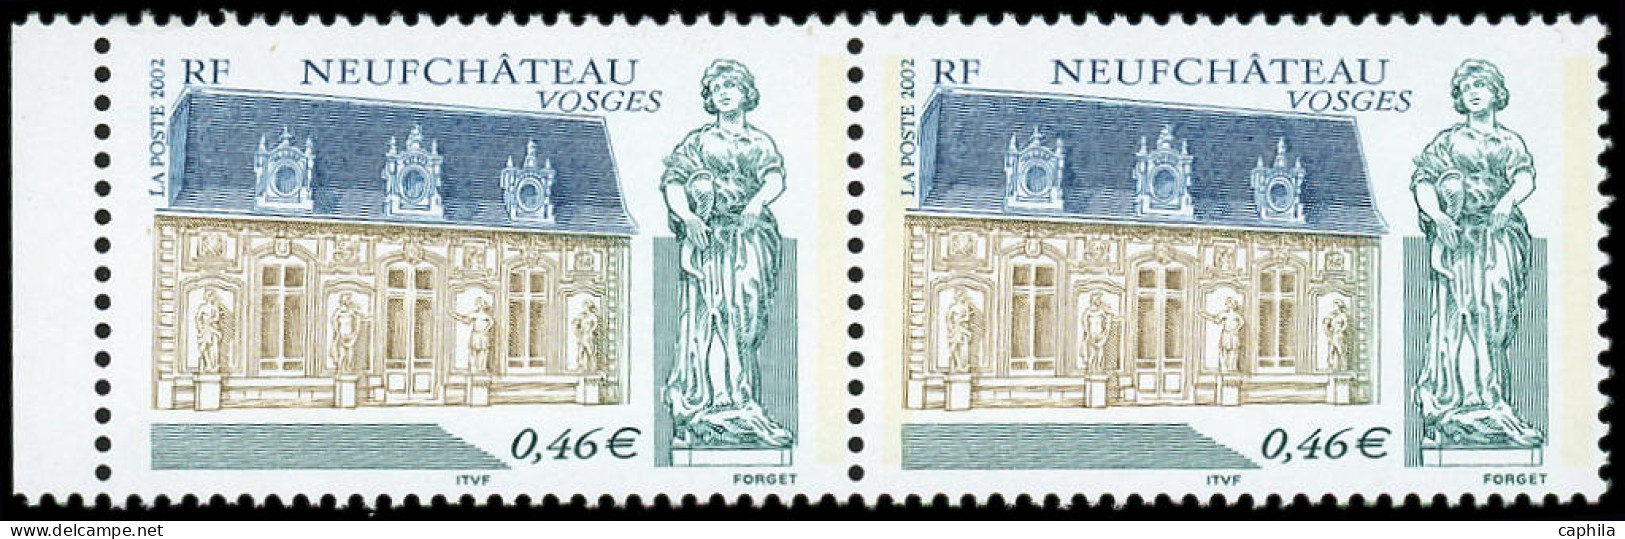 ** FRANCE - Poste - 3525c, Paire, 2 Bandes De Phosphore Tenant à Une: Neufchâteau - Unused Stamps